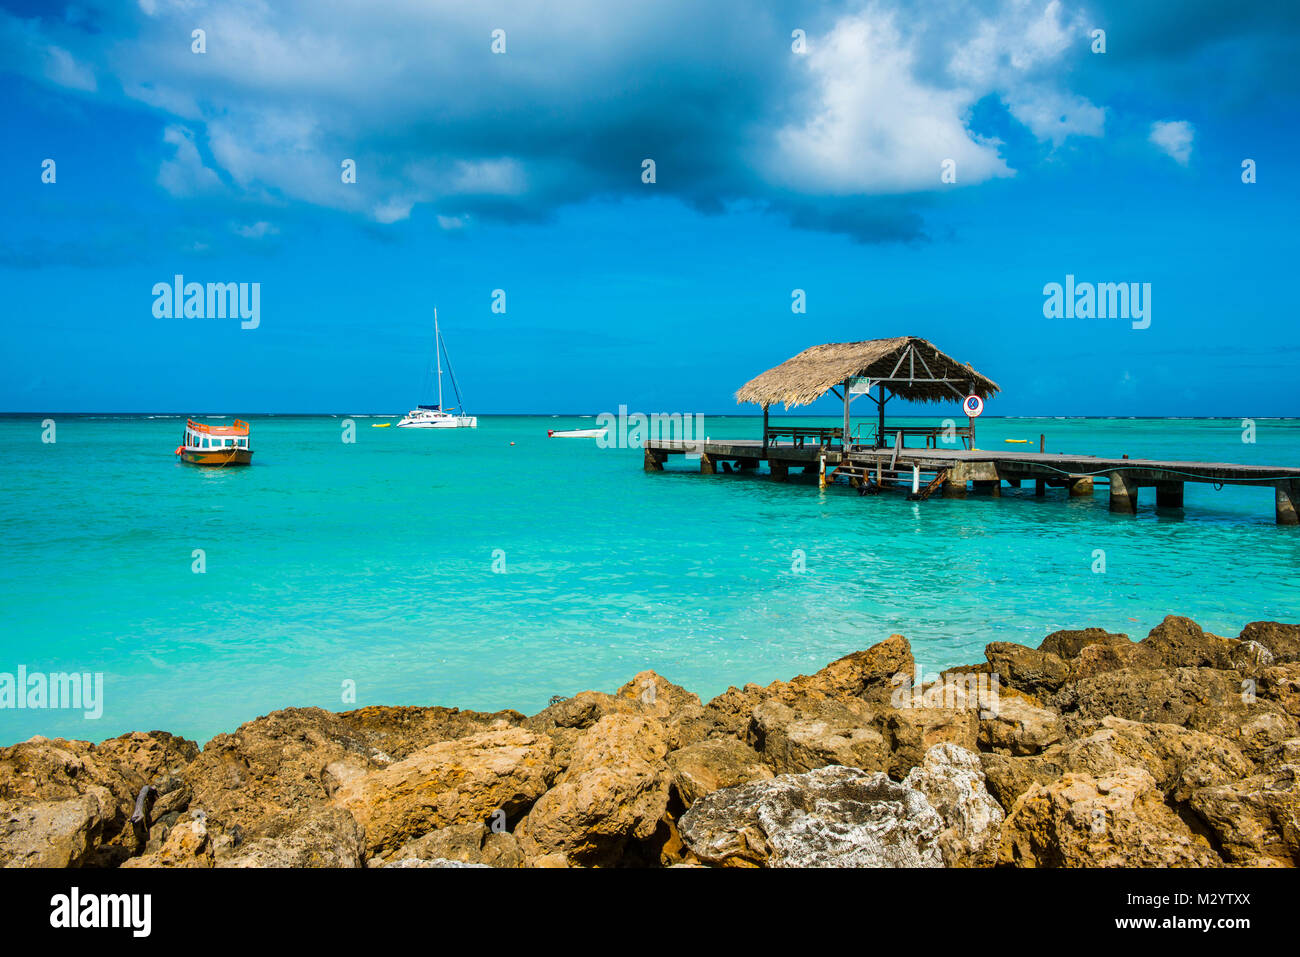 Il molo di legno nelle acque turchesi di Pigeon Point, Tobago Trinidad e Tobago, dei Caraibi Foto Stock